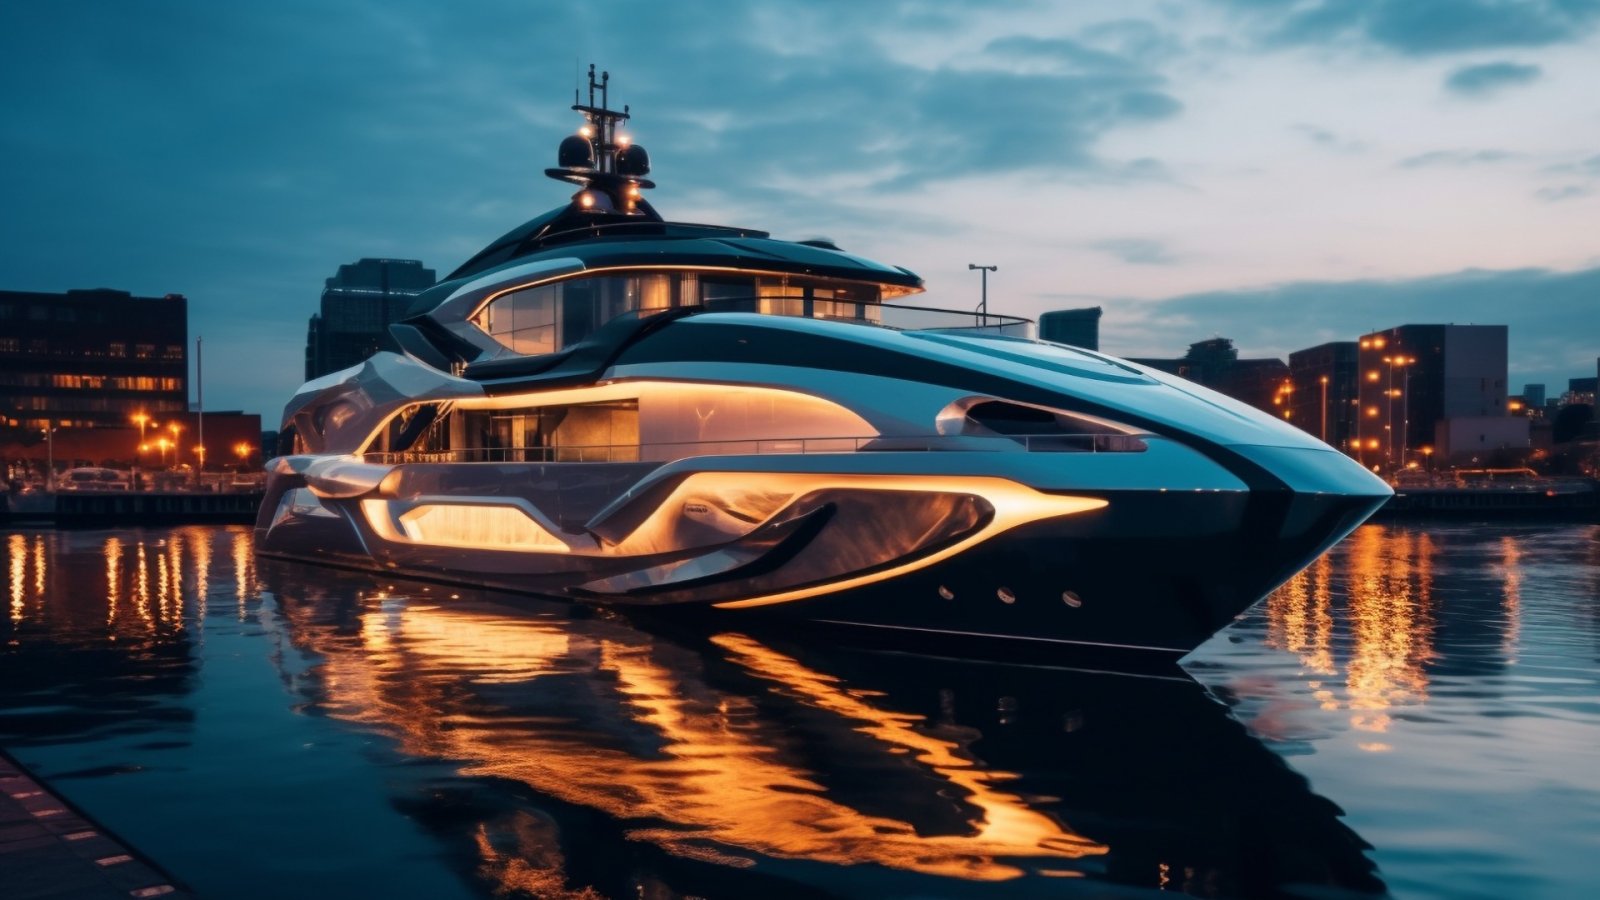 Bogaty Pardo GT52 wyznacza nowy standard luksusowego żeglarstwa